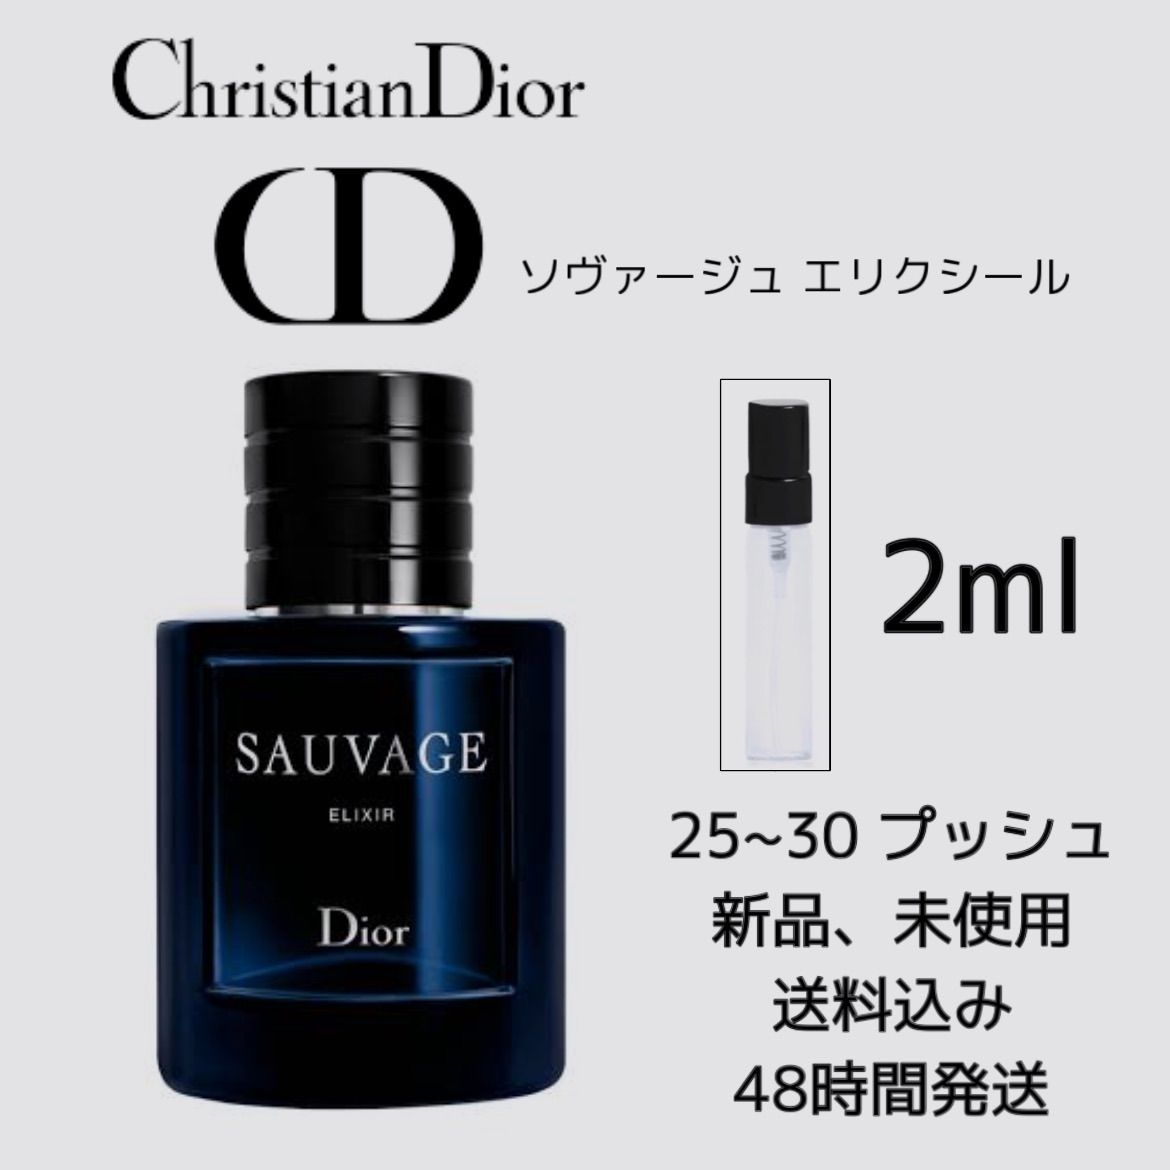 Dior 香水 ソヴァージュ 【代引不可】 - 基礎化粧品